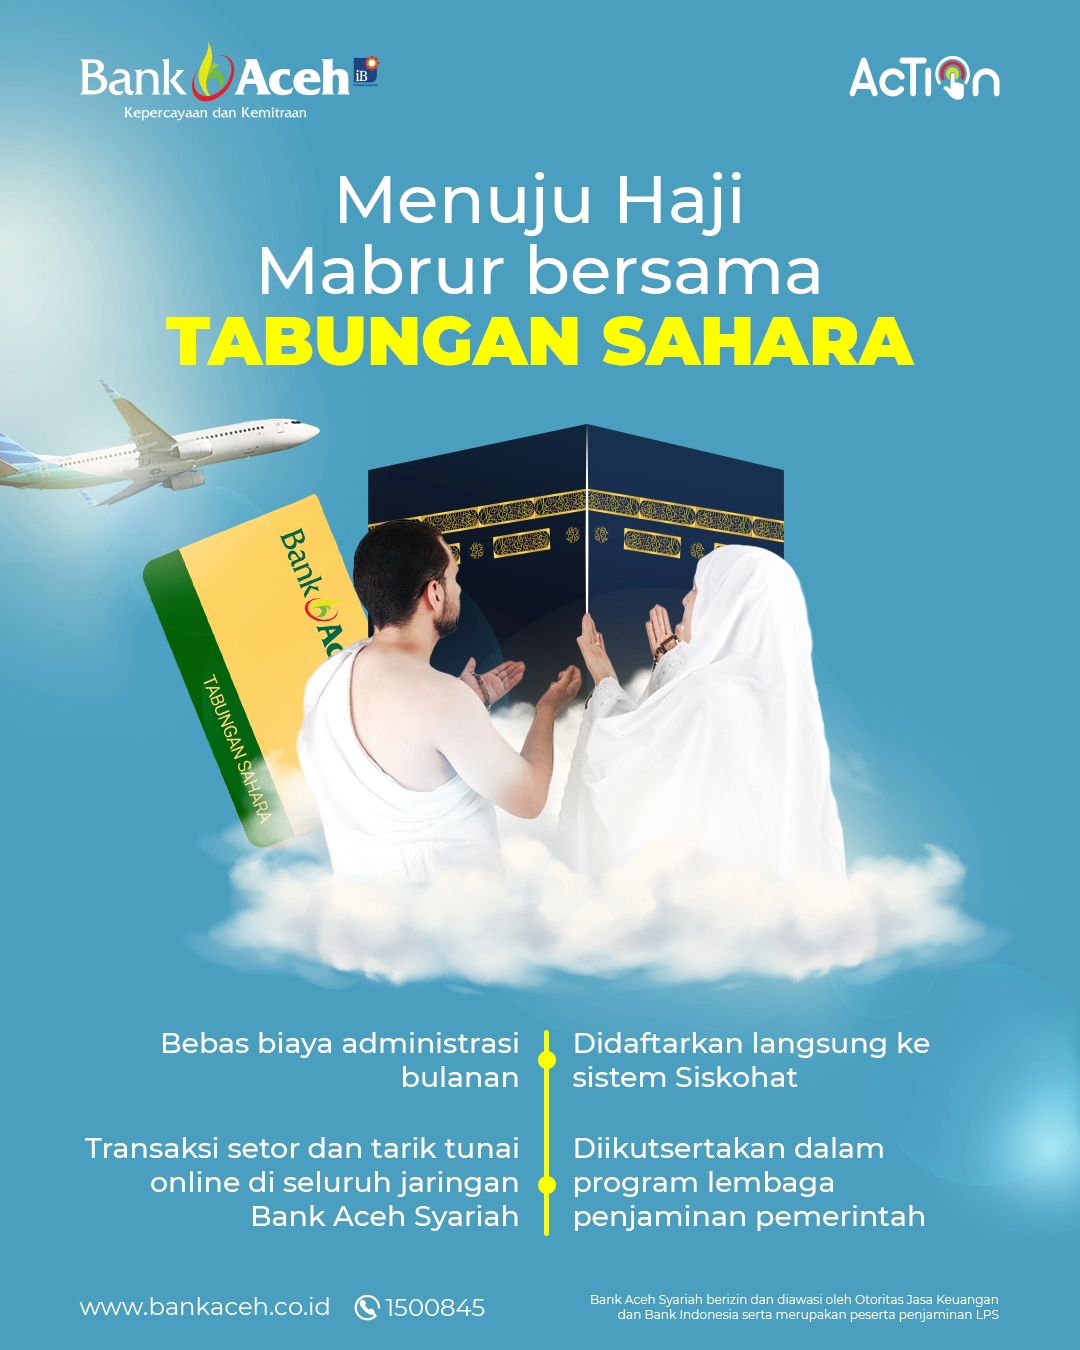 Menuju Haji Mabrur dengan Tabungan Sahara Bank Aceh Syariah